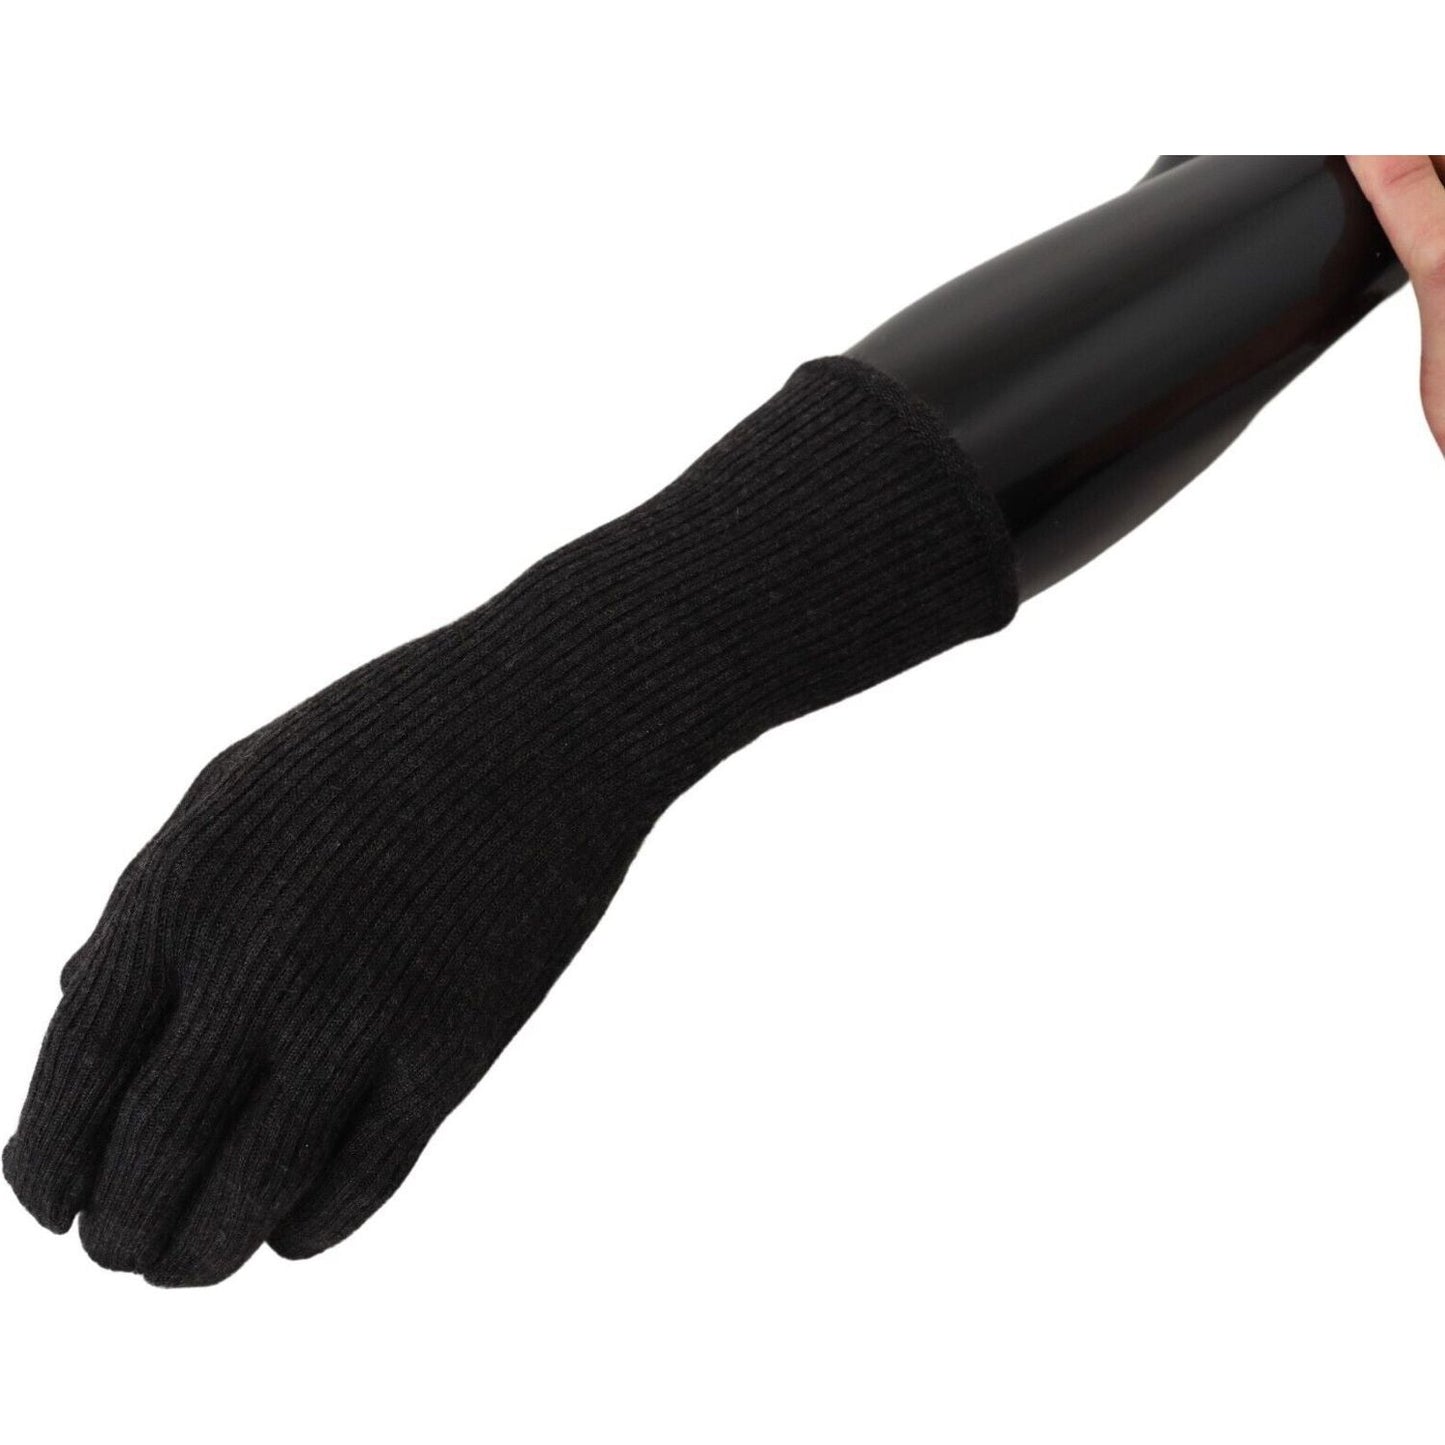 Dolce & Gabbana Elegant Silk Blend Winter Gloves black-cashmere-silk-hands-mitten-mens-gloves